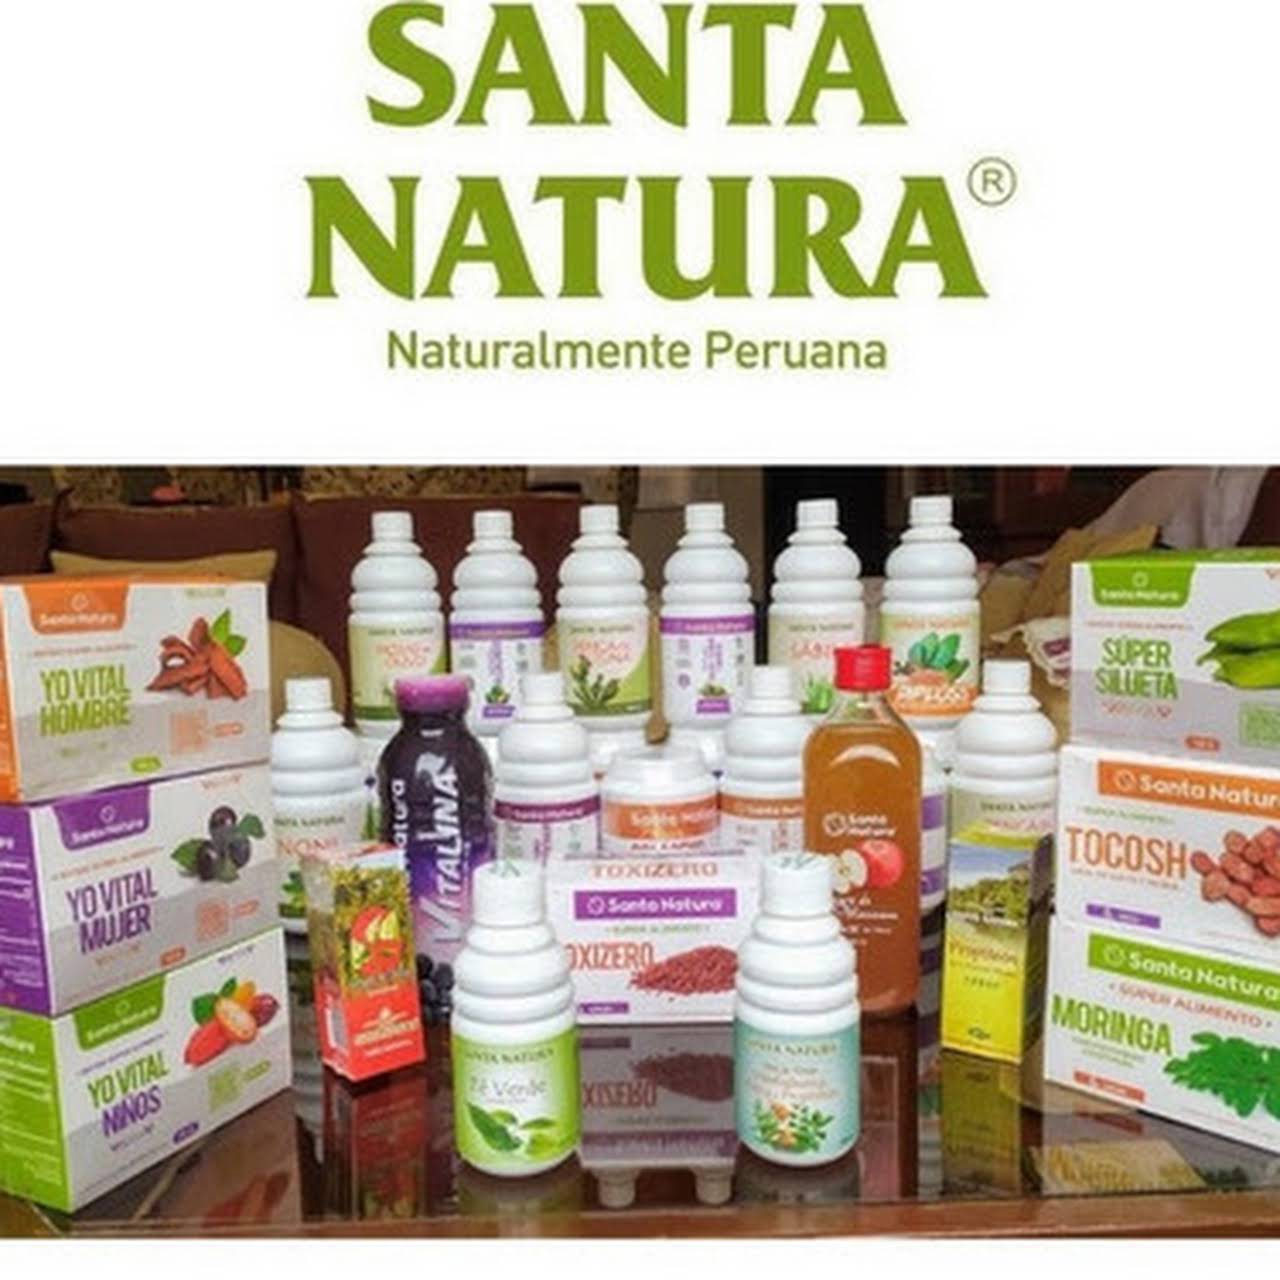 Productos naturales de Santa Natura en Chimbote - Tienda De Alimentos  Naturales